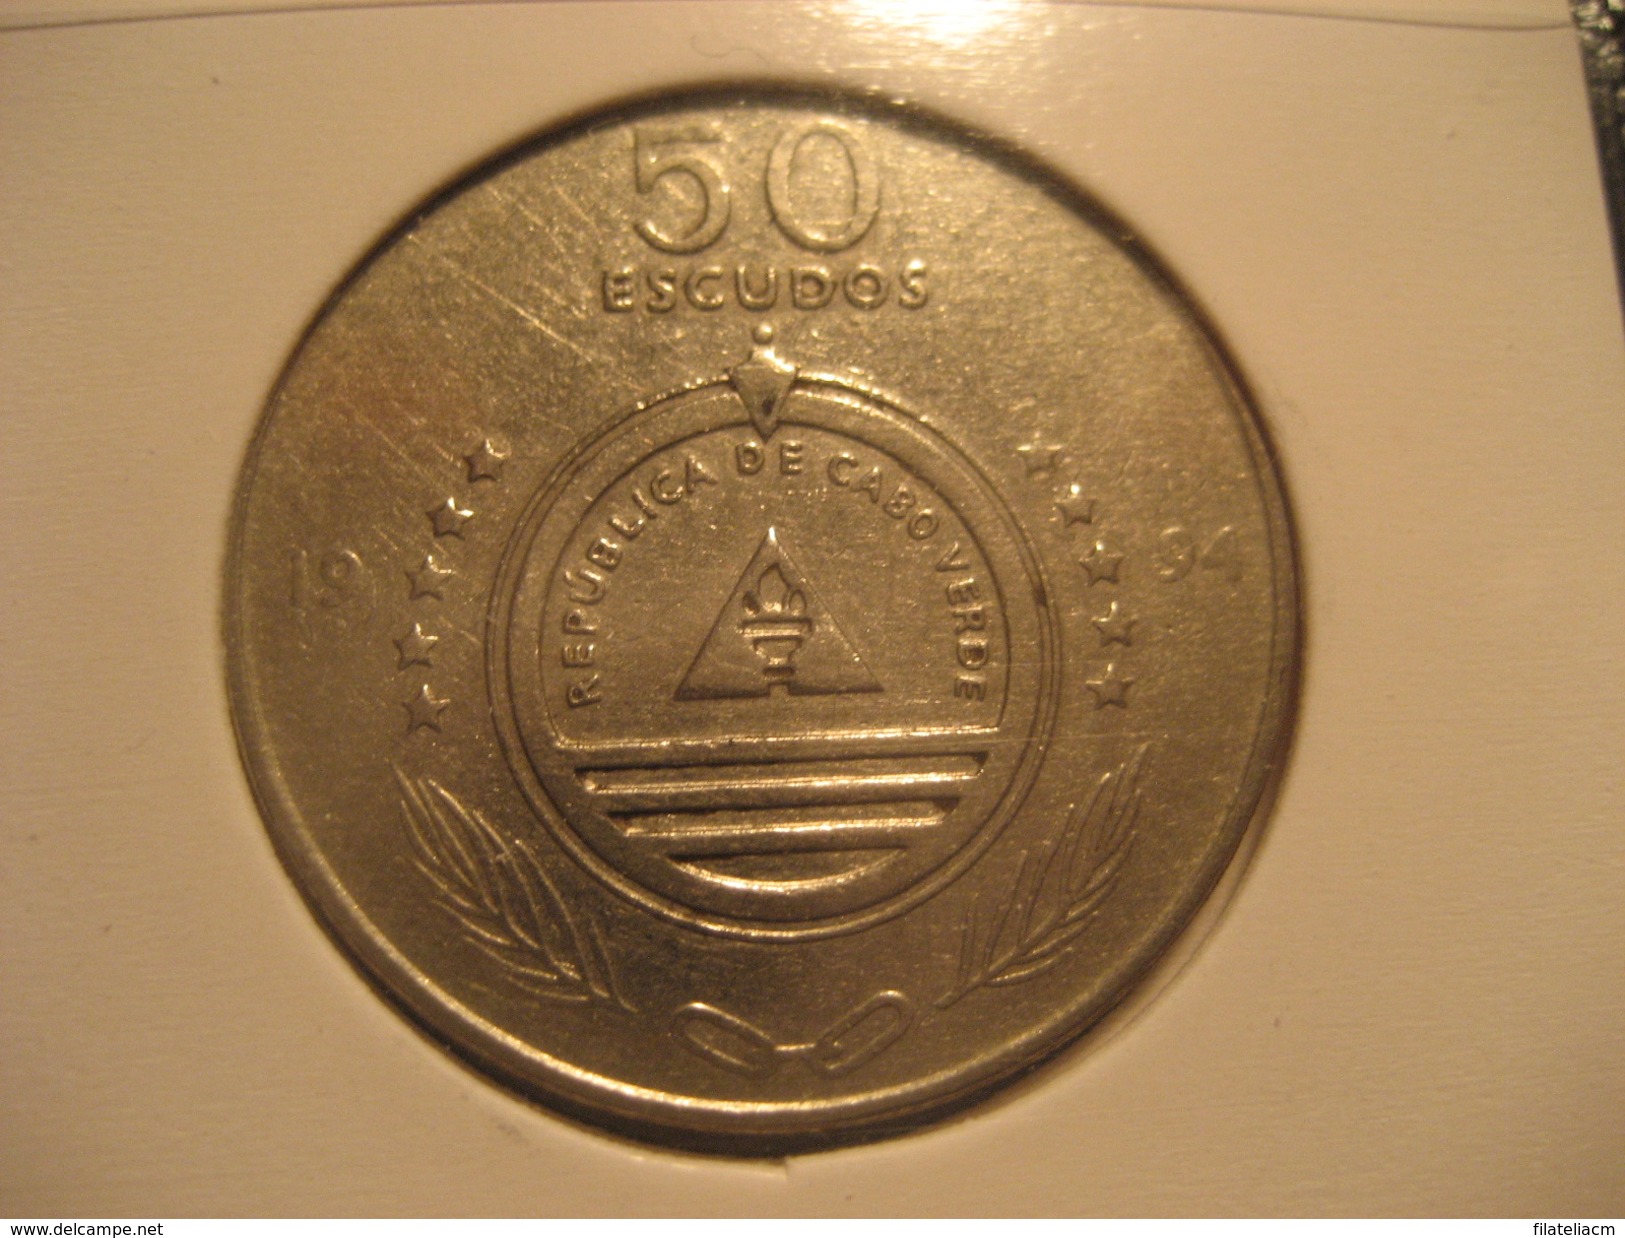 50 Escudos 1994 CAPE VERDE Coin Cap-Vert Cabo Verde - Cape Verde